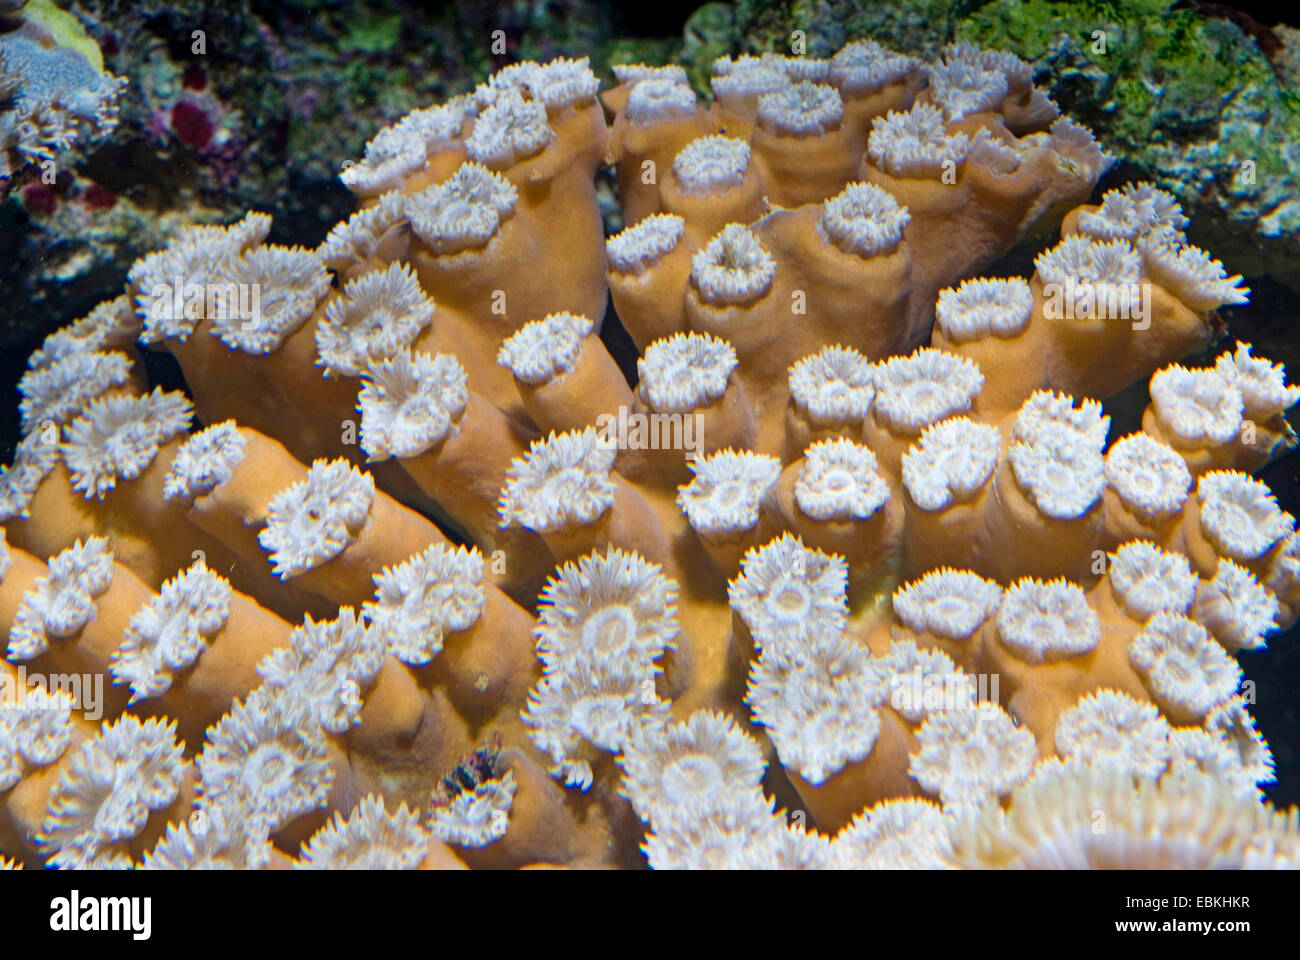 Stony corals (Duncanopsammia axifuga), colony Stock Photo